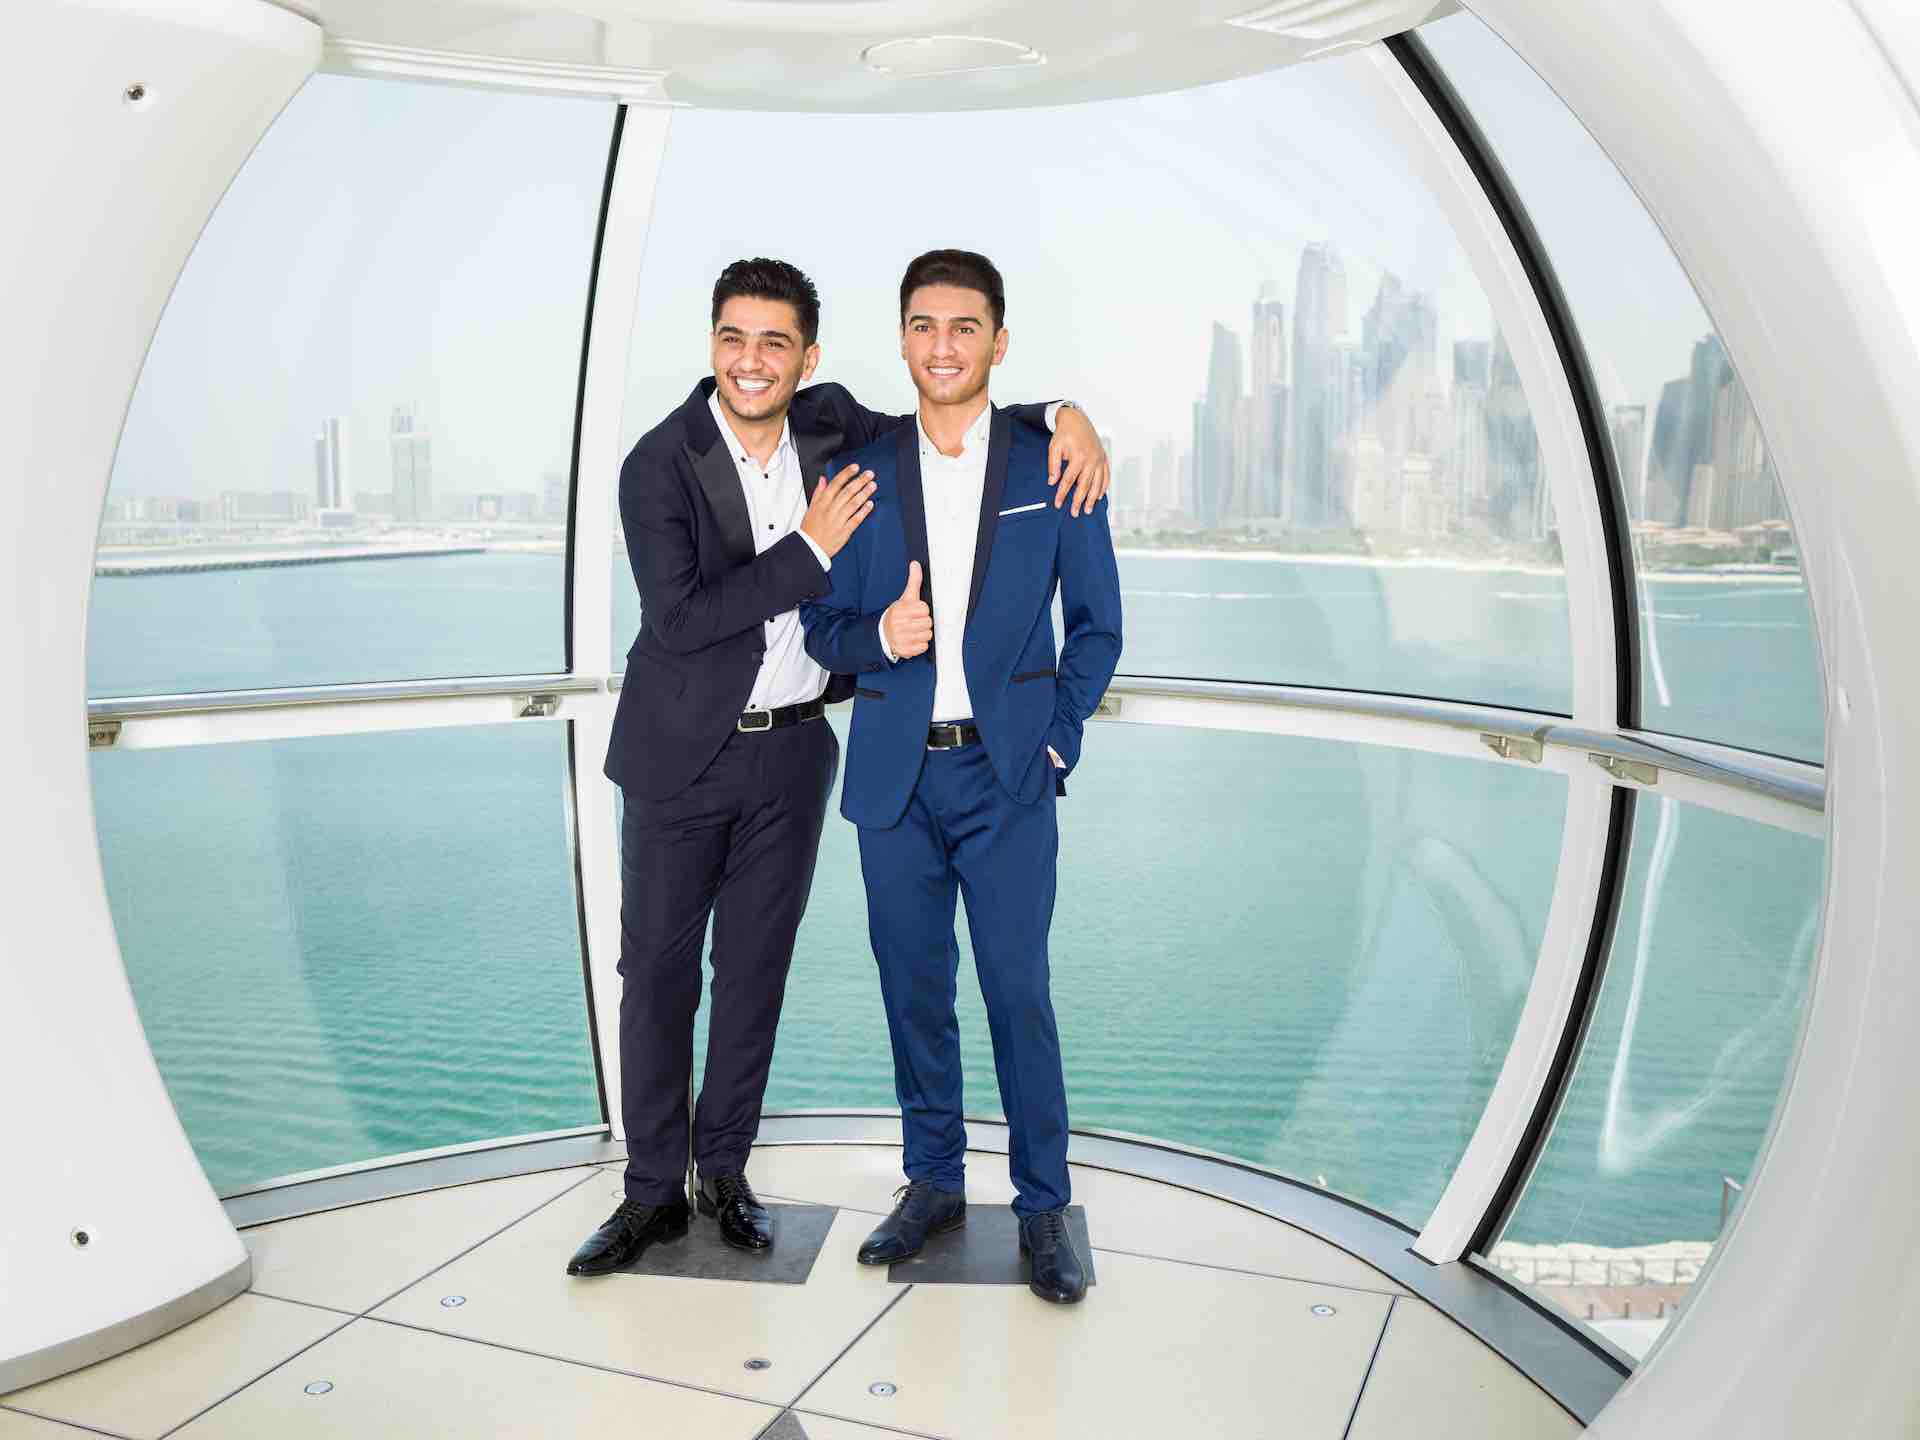 វាបានក្លាយជាអាចធ្វើទៅបានដើម្បីសម្រេចបាននូវក្តីសុបិន្តថ្លៃបំផុត; តារា​ចម្រៀង​ប៉ុប Mohamed Assaf ដែល​ស្រឡាញ់​អារ៉ាប់​ចូល​រួម​ក្នុង​បញ្ជី​ឈ្មោះ​តារា​ល្បី Madame Tussauds Dubai